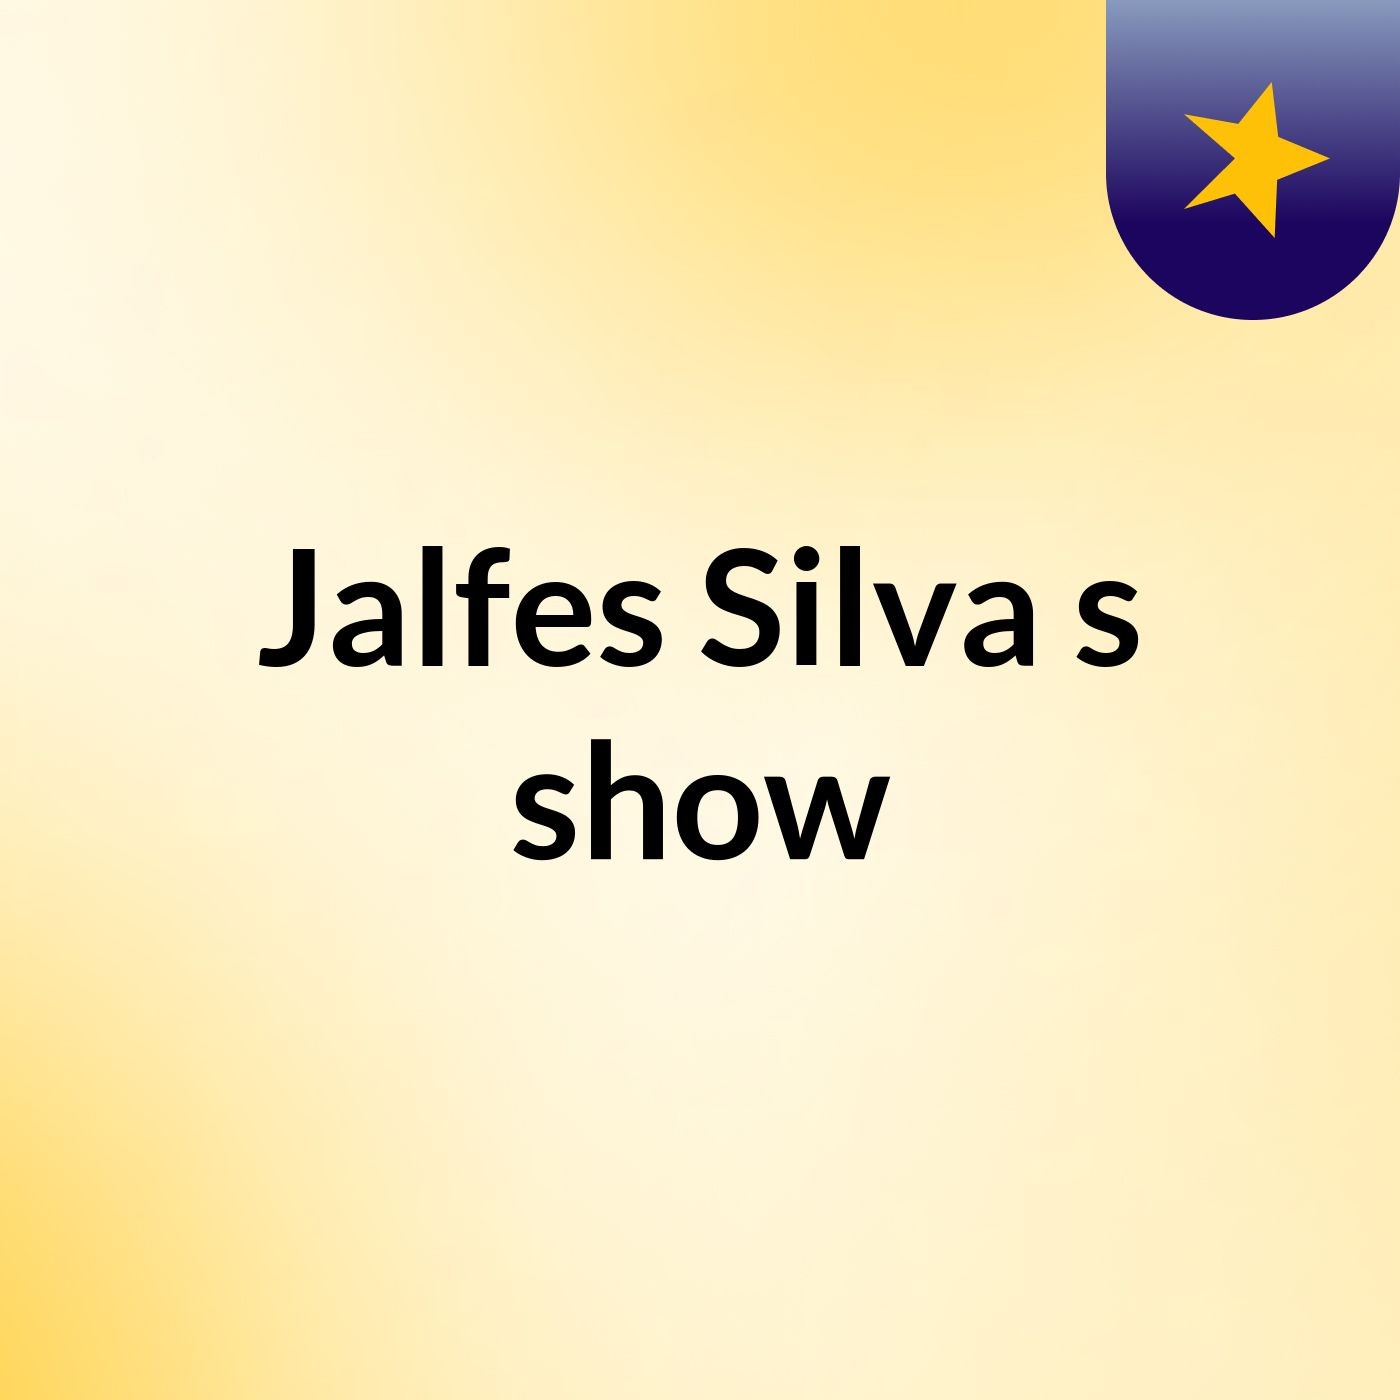 Jalfes Silva's show